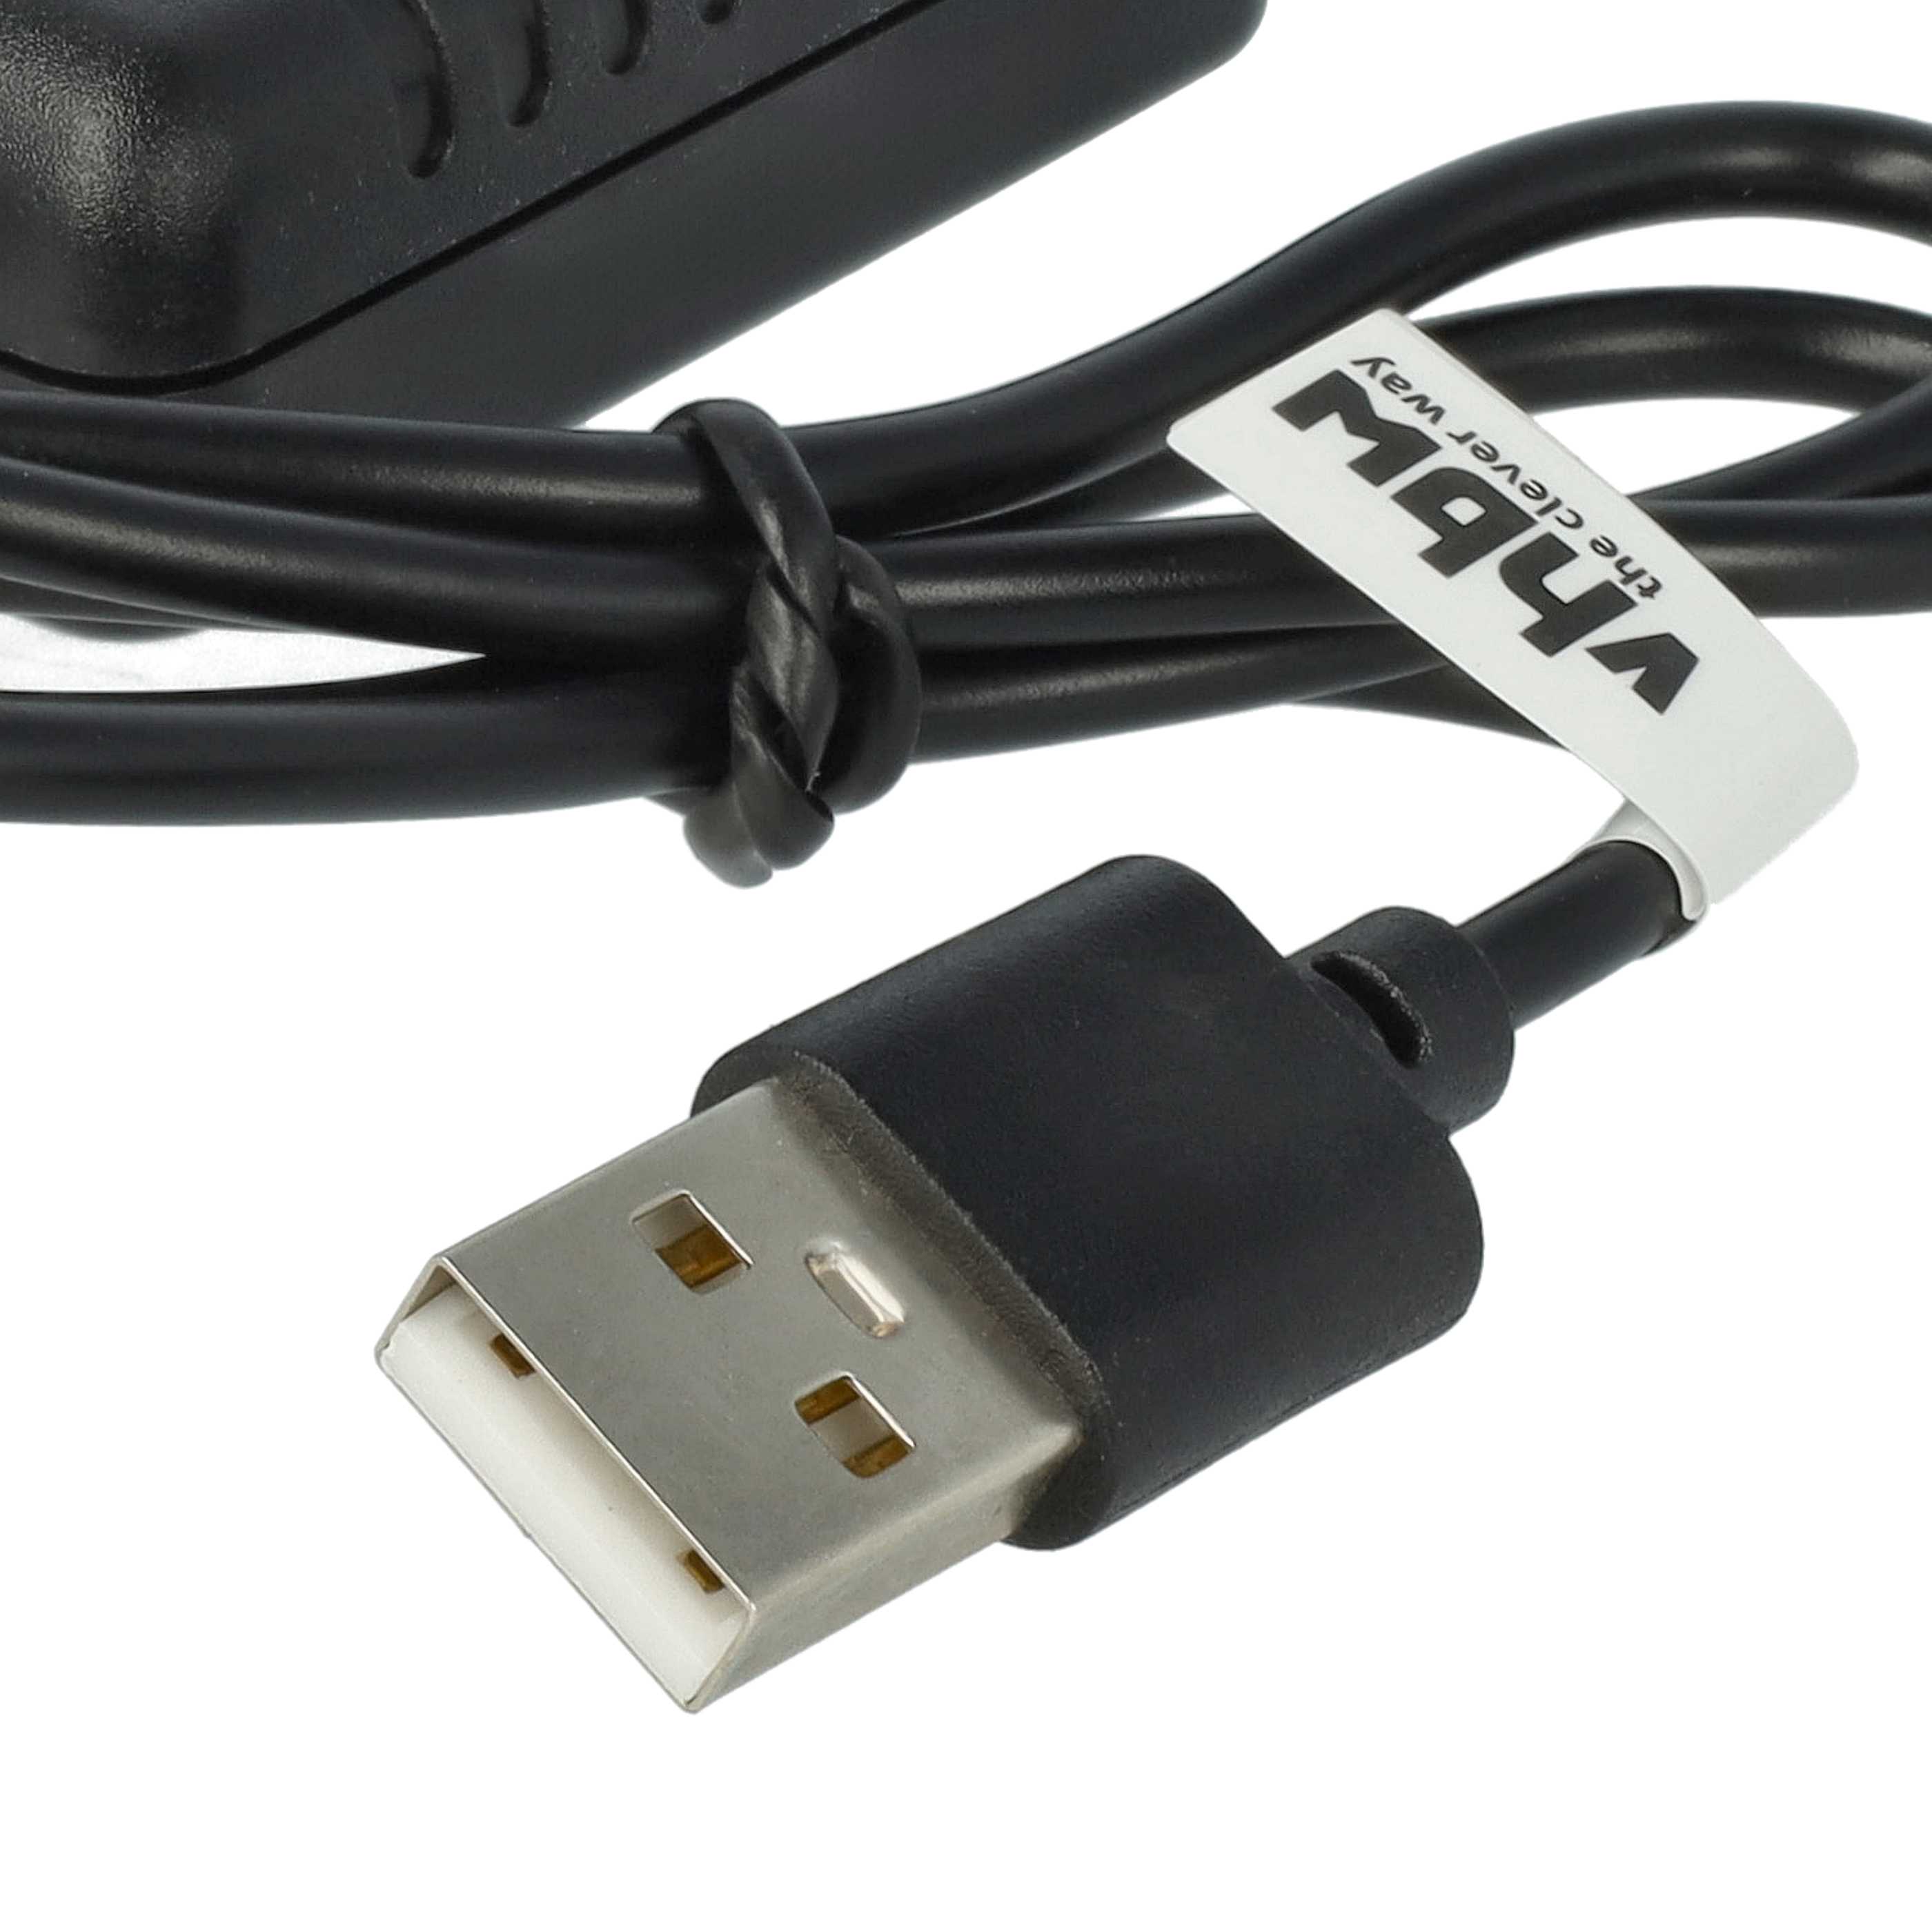 USB-Ladekabel passend für RC-Akkus, RC-Modellbau Akkupacks - 55cm 11,1V